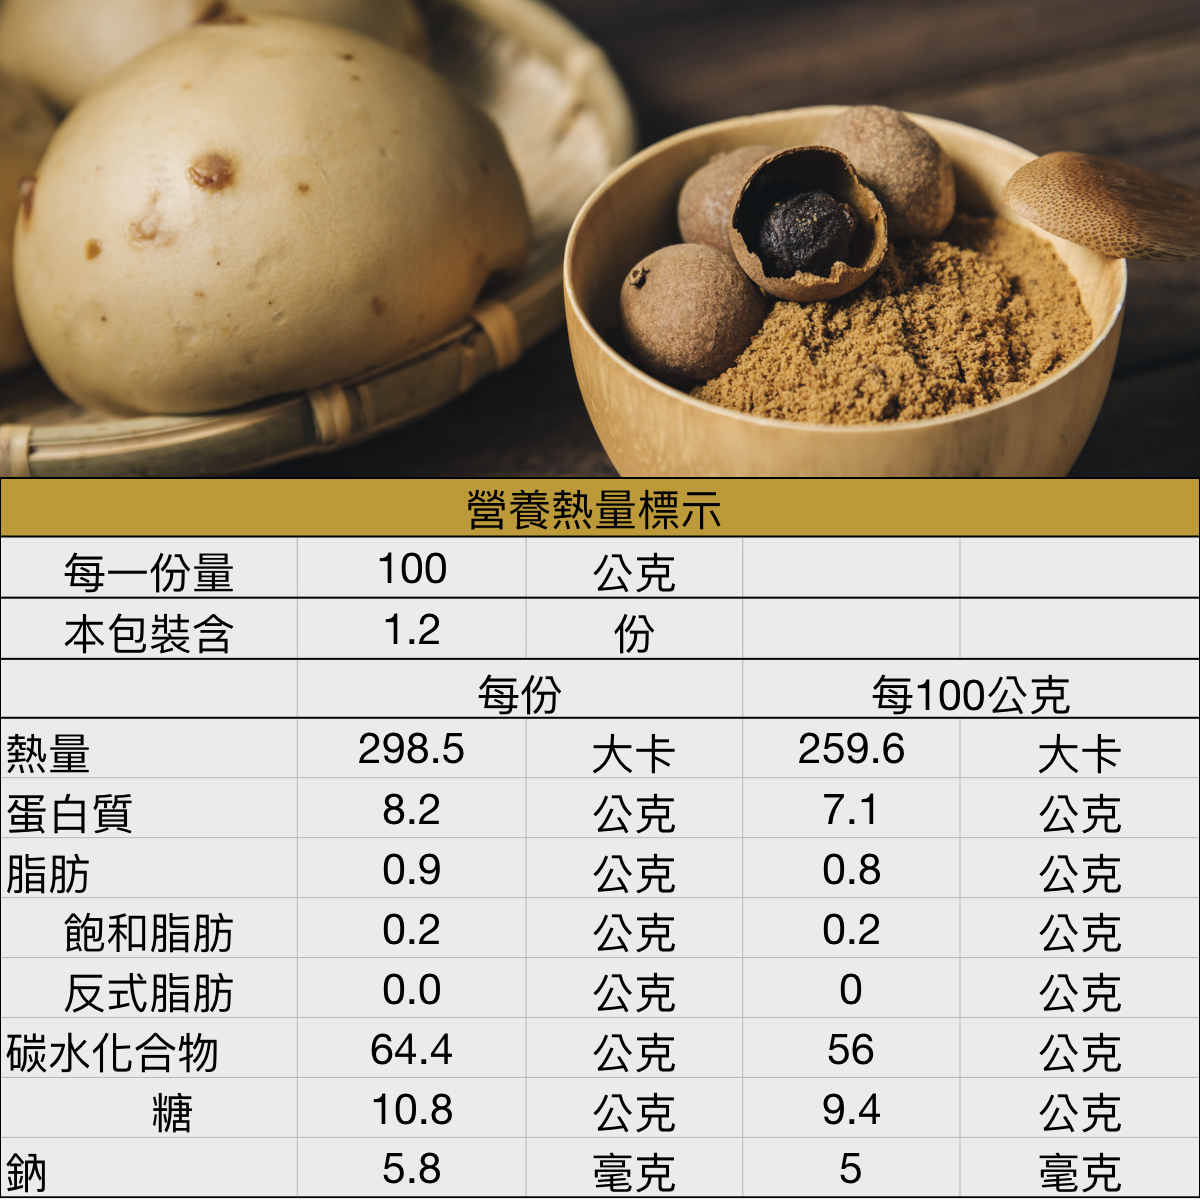 黑糖桂圓饅頭熱量營養表